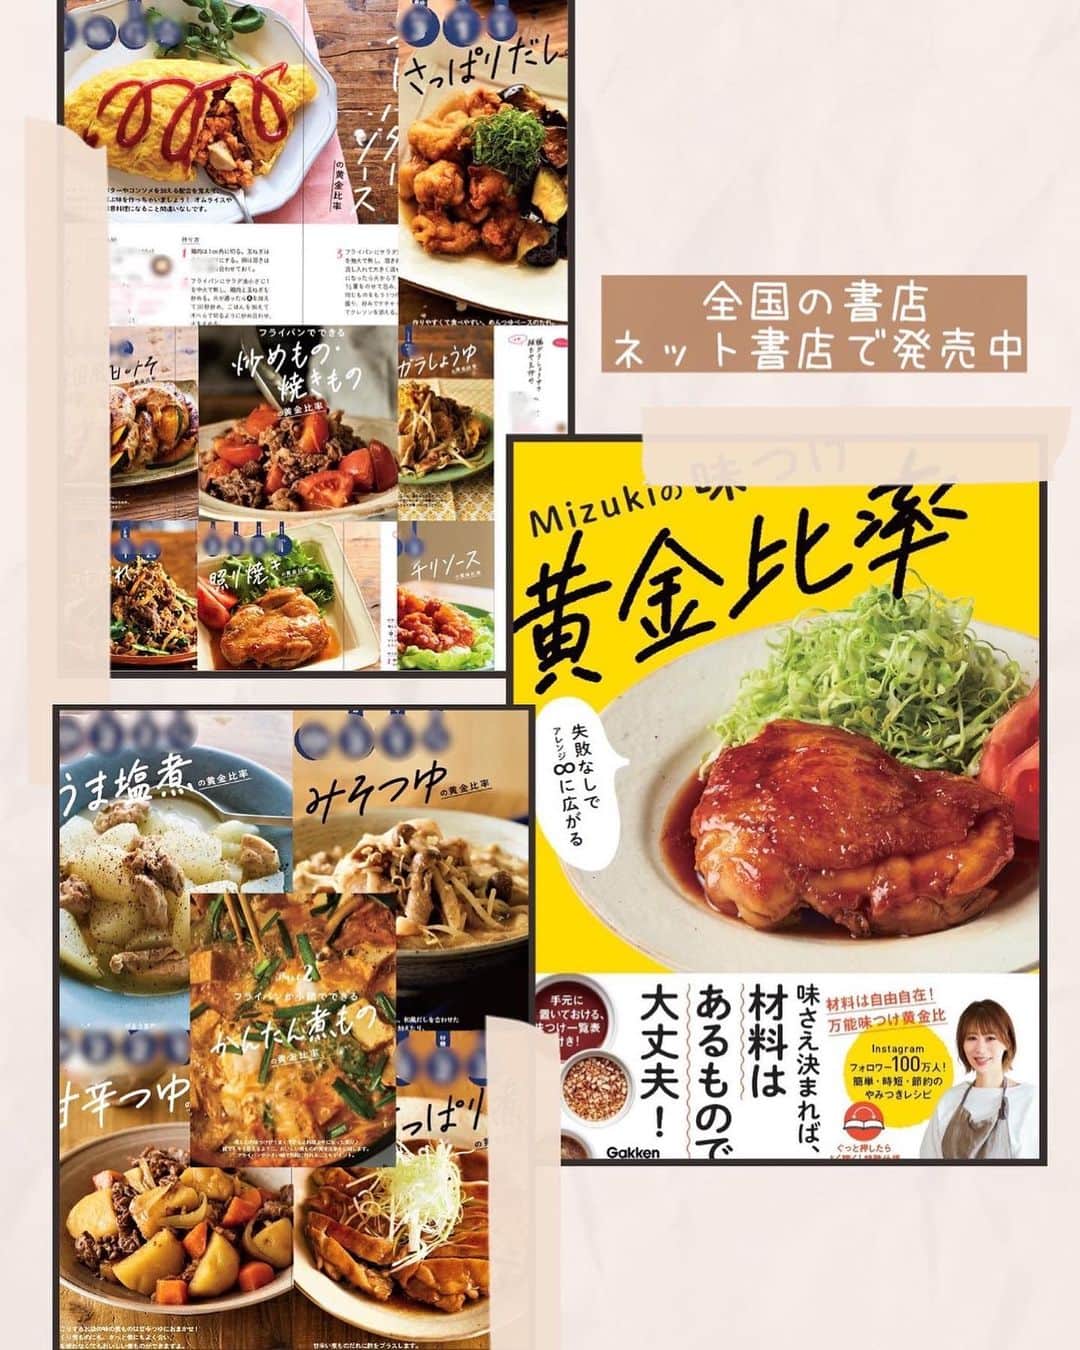 Mizuki【料理ブロガー・簡単レシピ】さんのインスタグラム写真 - (Mizuki【料理ブロガー・簡単レシピ】Instagram)「・春休みごはんにも💕 ⁡ ［#レシピ ］ ーーーーーーーーーーー あっさりコクうま！ ガーリック塩焼きそば ーーーーーーーーーーー ⁡ ⁡ ⁡ おはようございます☺️ ⁡ 今日ご紹介させていただくのは 春休みごはんにもおすすめの \ ガーリック塩焼きそば / ⁡ お手軽な豚バラキャベツに にんにくを加えて風味アップ💕 味付けは合わせ調味料で失敗なし❣️ の簡単レシピです✨ ⁡ あっさりコクのある味わいで ハマるおいしさですよ〜😋 よかったらお試しくださいね✨ ⁡ ⁡ 【簡単・時短・節約レシピ更新中🔻】 @mizuki_31cafe ⁡ ⁡ ⁡ ＿＿＿＿＿＿＿＿＿＿＿＿＿＿＿＿＿＿＿ 【2人分】 焼きそば...2玉 豚バラ薄切り肉...100g キャベツ...1/5個(200g) にんにく...1かけ サラダ油...小1 ●酒・鶏がらスープ・ごま油...各大1 ●塩...小1/4 粗挽き黒こしょう...適量 ⁡ 1.豚肉は3cm長さに切る。キャベツはざく切り、にんにくは薄切りにする。●は合わせておく。焼きそばは袋に穴をあけ、600Wのレンジで2分加熱する。 2.フライパンに油を中火で熱して豚肉とにくにくを炒める。肉の色が変わったらキャベツも加えて更に炒め、しんなりしたら焼きそばも加えて炒める。 3.●を加えて炒め合わせ、器に盛り、黒こしょうを振る。 ￣￣￣￣￣￣￣￣￣￣￣￣￣￣￣￣￣￣￣ ⁡ ⁡ 《ポイント》 ♦︎焼きそばはレンチンしておくとほぐれやすくなります♩ ♦︎にんにくがない場合、チューブ(2〜3cm)で代用しても◎合わせ調味料に加えてください♩ ♦︎豚バラがおすすめですが、豚こまで代用OKです♩ ⁡ ⁡ ⁡ ⁡ ⁡ 💬💬💬 体調のことで ご心配をおかけしてすみません🙇‍♀️ そしてほんとに沢山のDMまで ありがとうございました。涙 おかげさまで良くなってきました☺️🌸 ⁡ ところでみなさんは大丈夫ですか？ この季節は花粉も 気温・気圧の変化もすごいですよね💦 又、一年の疲れが出る時期だと思いますし 新生活という変化もあったり••• 春ってすごくいい季節だけど 順応力を求められますね😅笑 ⁡ 私はとにかく休むのが苦手なタイプですが (不安になるし気持ちが焦る💦) 細く長くやっていきたいので 少しは身体の声も聞こうと思います😰🔨 ⁡ これからぼちぼちになるかもですが 今後ともよろしくお願いします🙇‍♀️🌸 ⁡ ⁡ ⁡ ⁡ ⁡ ⁡ 𖤣𖥧𖥣𖡡𖥧𖤣✨ 愛用している調理器具や器などは #楽天ROOMに載せてます ‎𐩢𐩺 (ハイライトから飛べます🛍) ⁡ ⁡ ⁡ ⁡ ⁡ ⁡ 🔶全国の書店・ネット書店で発売中🔶 ⁡ ✼••┈┈┈┈┈••✼••┈┈┈┈┈••✼ 今日のごはんこれに決まり！ ‎𓊆#Mizukiのレシピノート 500品𓊇 ✼••┈┈┈┈┈••✼••┈┈┈┈┈••✼ ⁡ ˗ˏˋ おかげさまで23万部突破 ˎˊ˗ 料理レシピ本大賞準大賞を受賞しました🙇‍♀️ ⁡ 6000点の中からレシピを厳選し まさかの【500レシピ掲載】❣️ 肉や魚のメインおかずはもちろん 副菜、丼、麺、スープ、お菓子 ハレの日のレシピ、鍋のレシピまで 全てこの一冊で完結𓌉◯𓇋✨ ⁡ ⁡ ⁡ 📕新刊発売中📕 ⁡ ✼••┈┈┈••✼••┈┈┈••✼ Mizukiのカンタン手作り   𓊆 #3時のおやつ 𓊇 ✼••┈┈┈••✼••┈┈┈••✼ ⁡ 『3分クッキング』で連載中の 「Mizukiのカンタン手作り」 ‎4年分のおやつが1冊になりました！ ❝オーブンなしで❞ 身近な材料と道具でできる 簡単、手軽なおやつを80品🍪 ⁡ ⁡ ⁡ ⁡ ⁡ ⁡ ⁡ #ガーリック塩焼きそばm #塩焼きそば #焼きそば #キャベツ #キャベツレシピ #豚肉 #豚肉レシピ #料理 #時短レシピ  #節約料理 #簡単料理  #時短料理  #mizukiレシピ  #アルモンデ #節約レシピ #簡単レシピ」4月4日 7時19分 - mizuki_31cafe